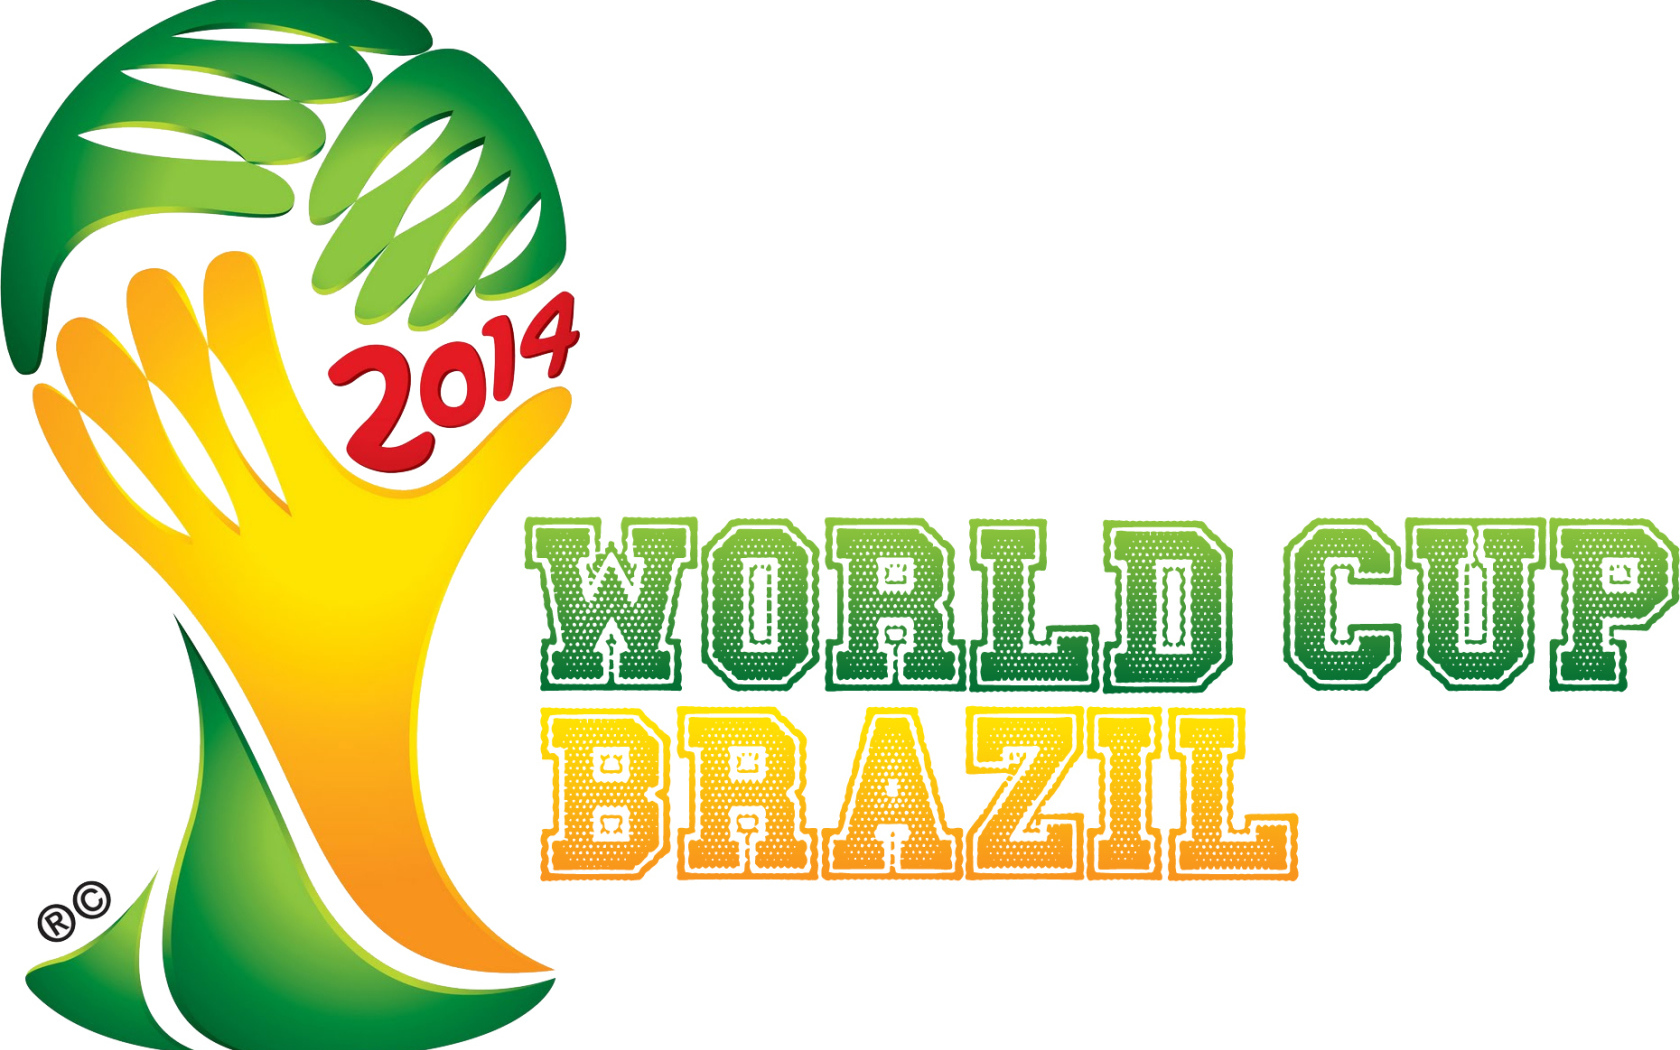 Символ Чемпионата Мира по футболу в Бразилии 2014